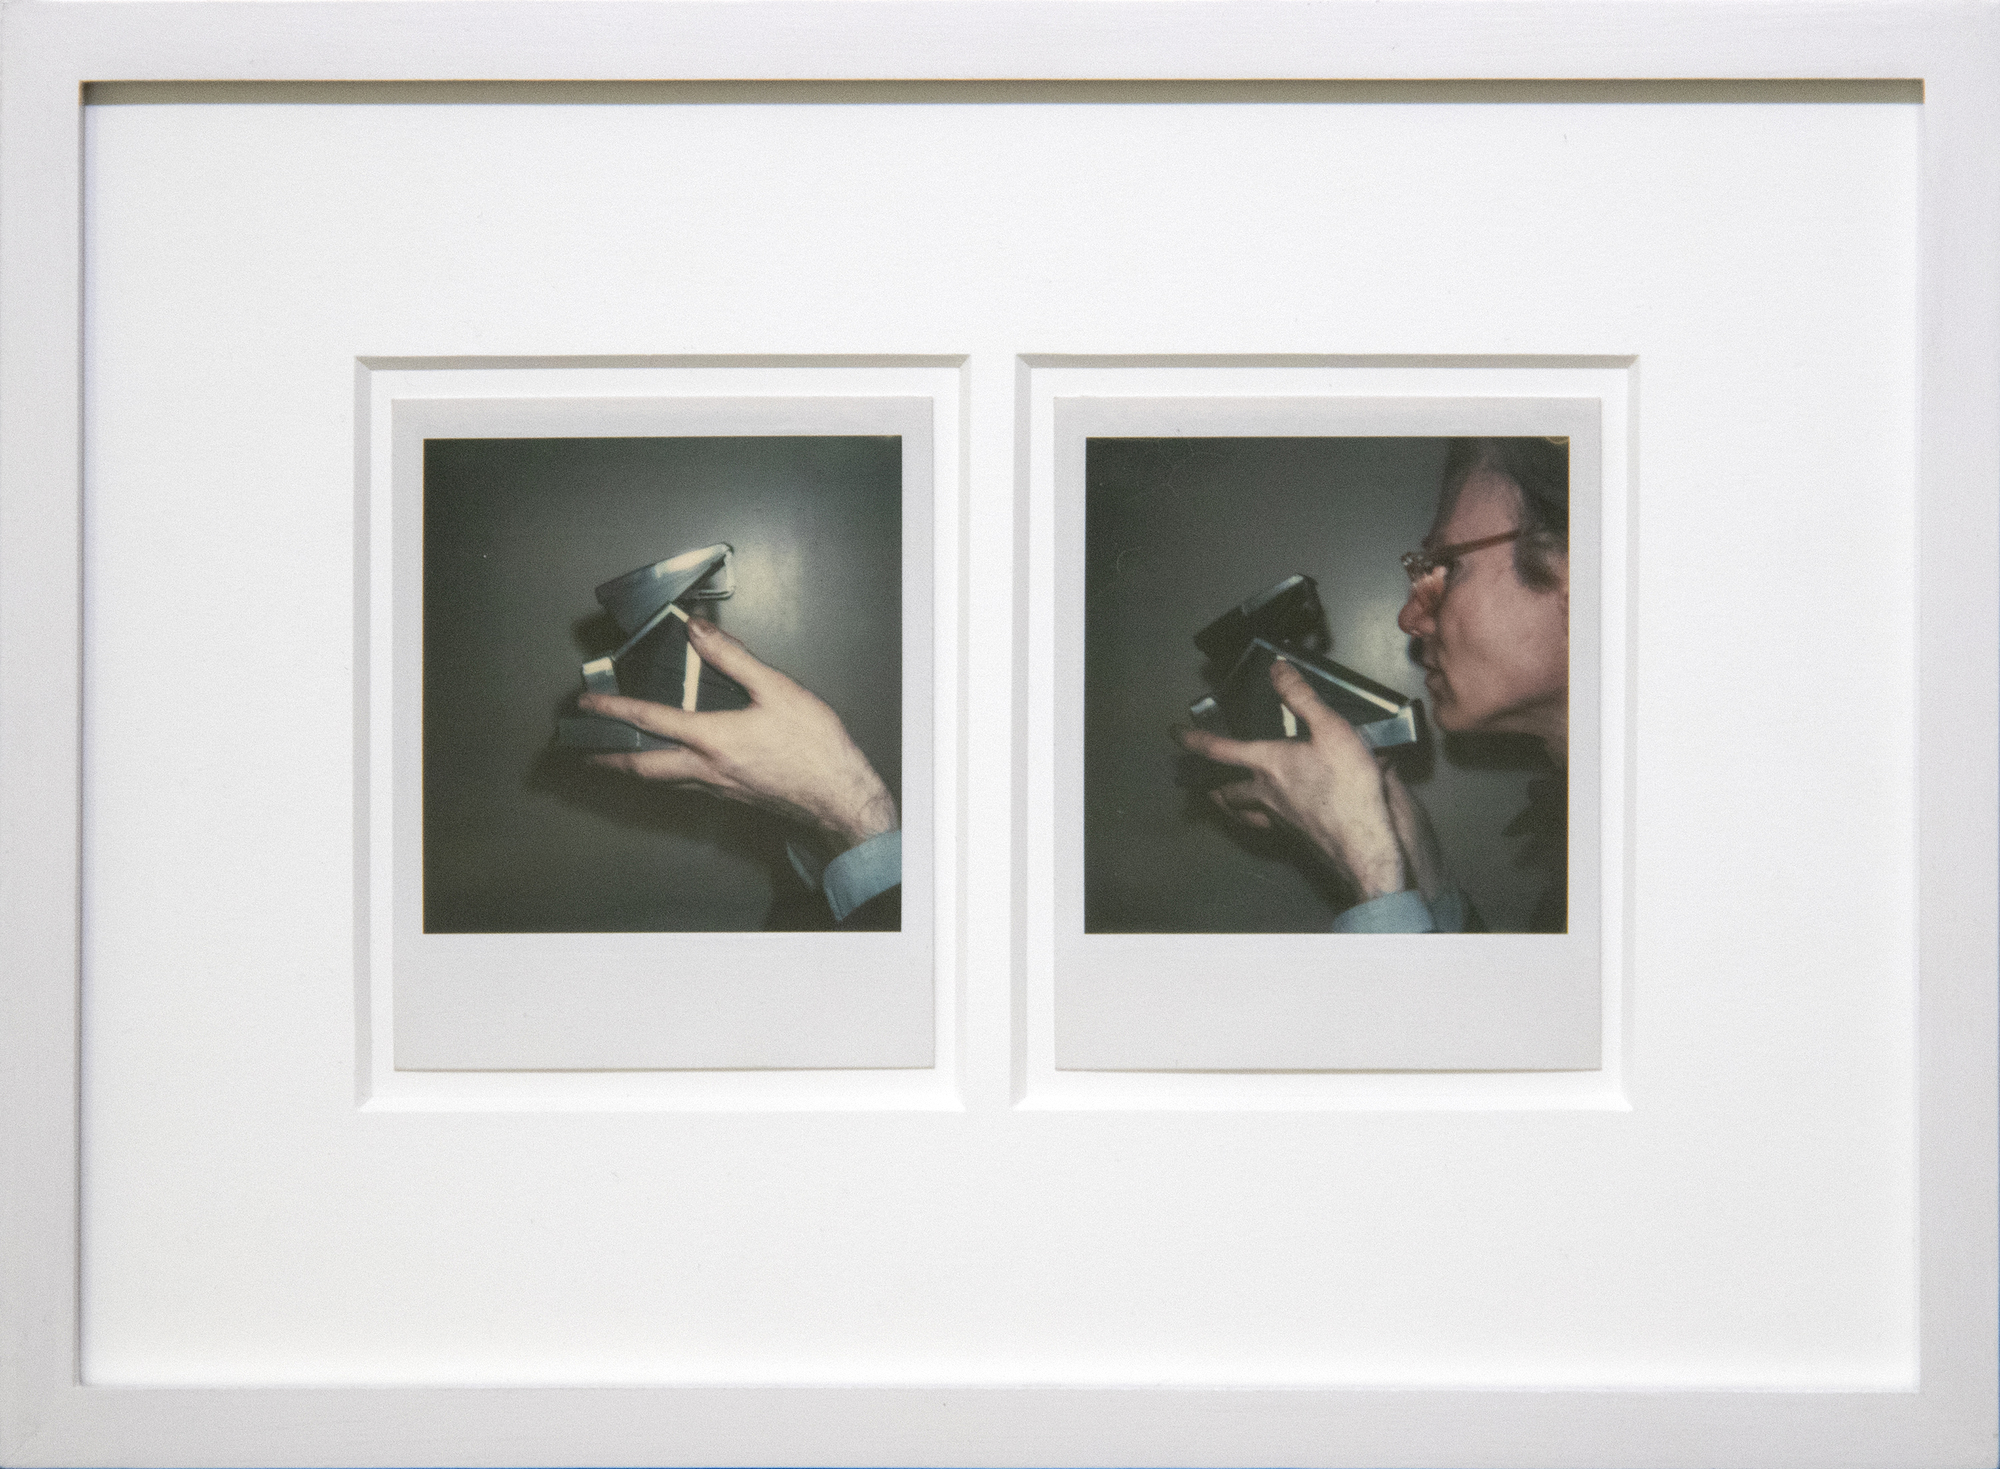 ANDY WARHOL - Autoportrait avec appareil photo (diptyque) - Polaroid, Polacolor - 4 1/4 x 3 3/8 in. ea.